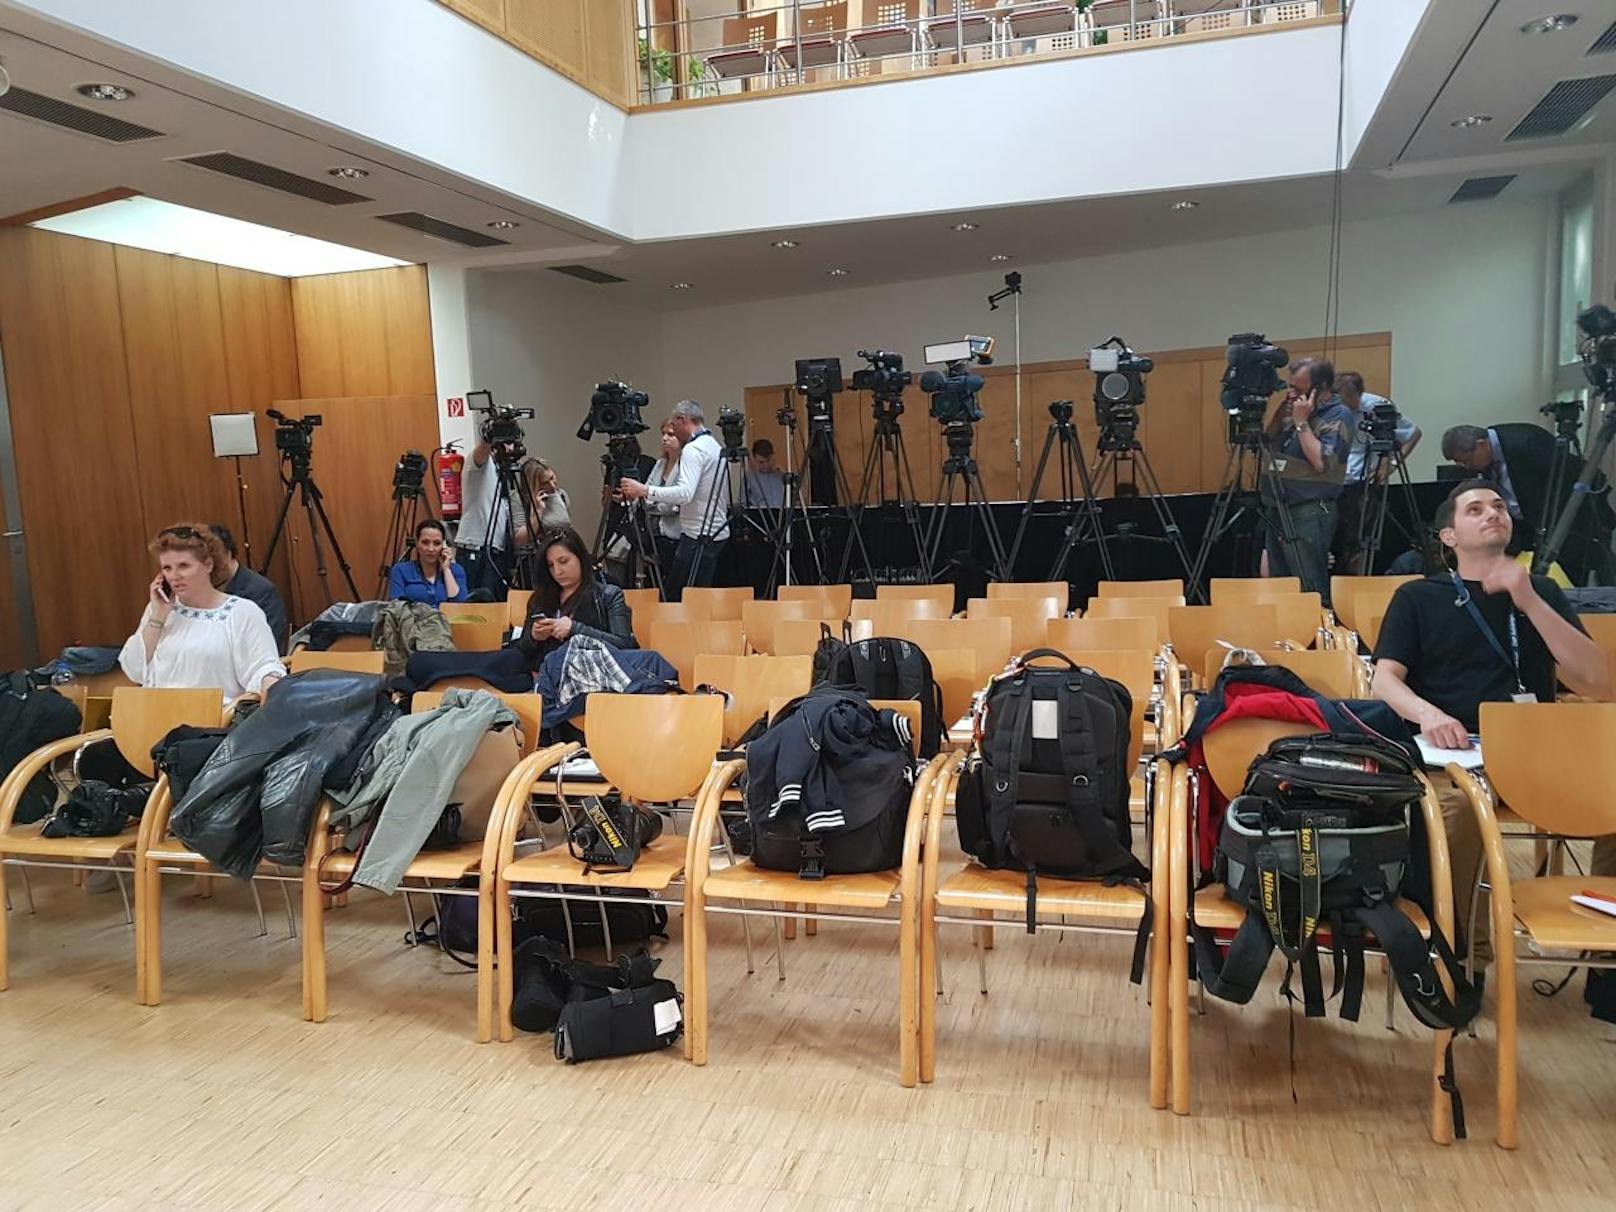 Journalisten warten auf die Pressekonferenz nach der Sitzung.